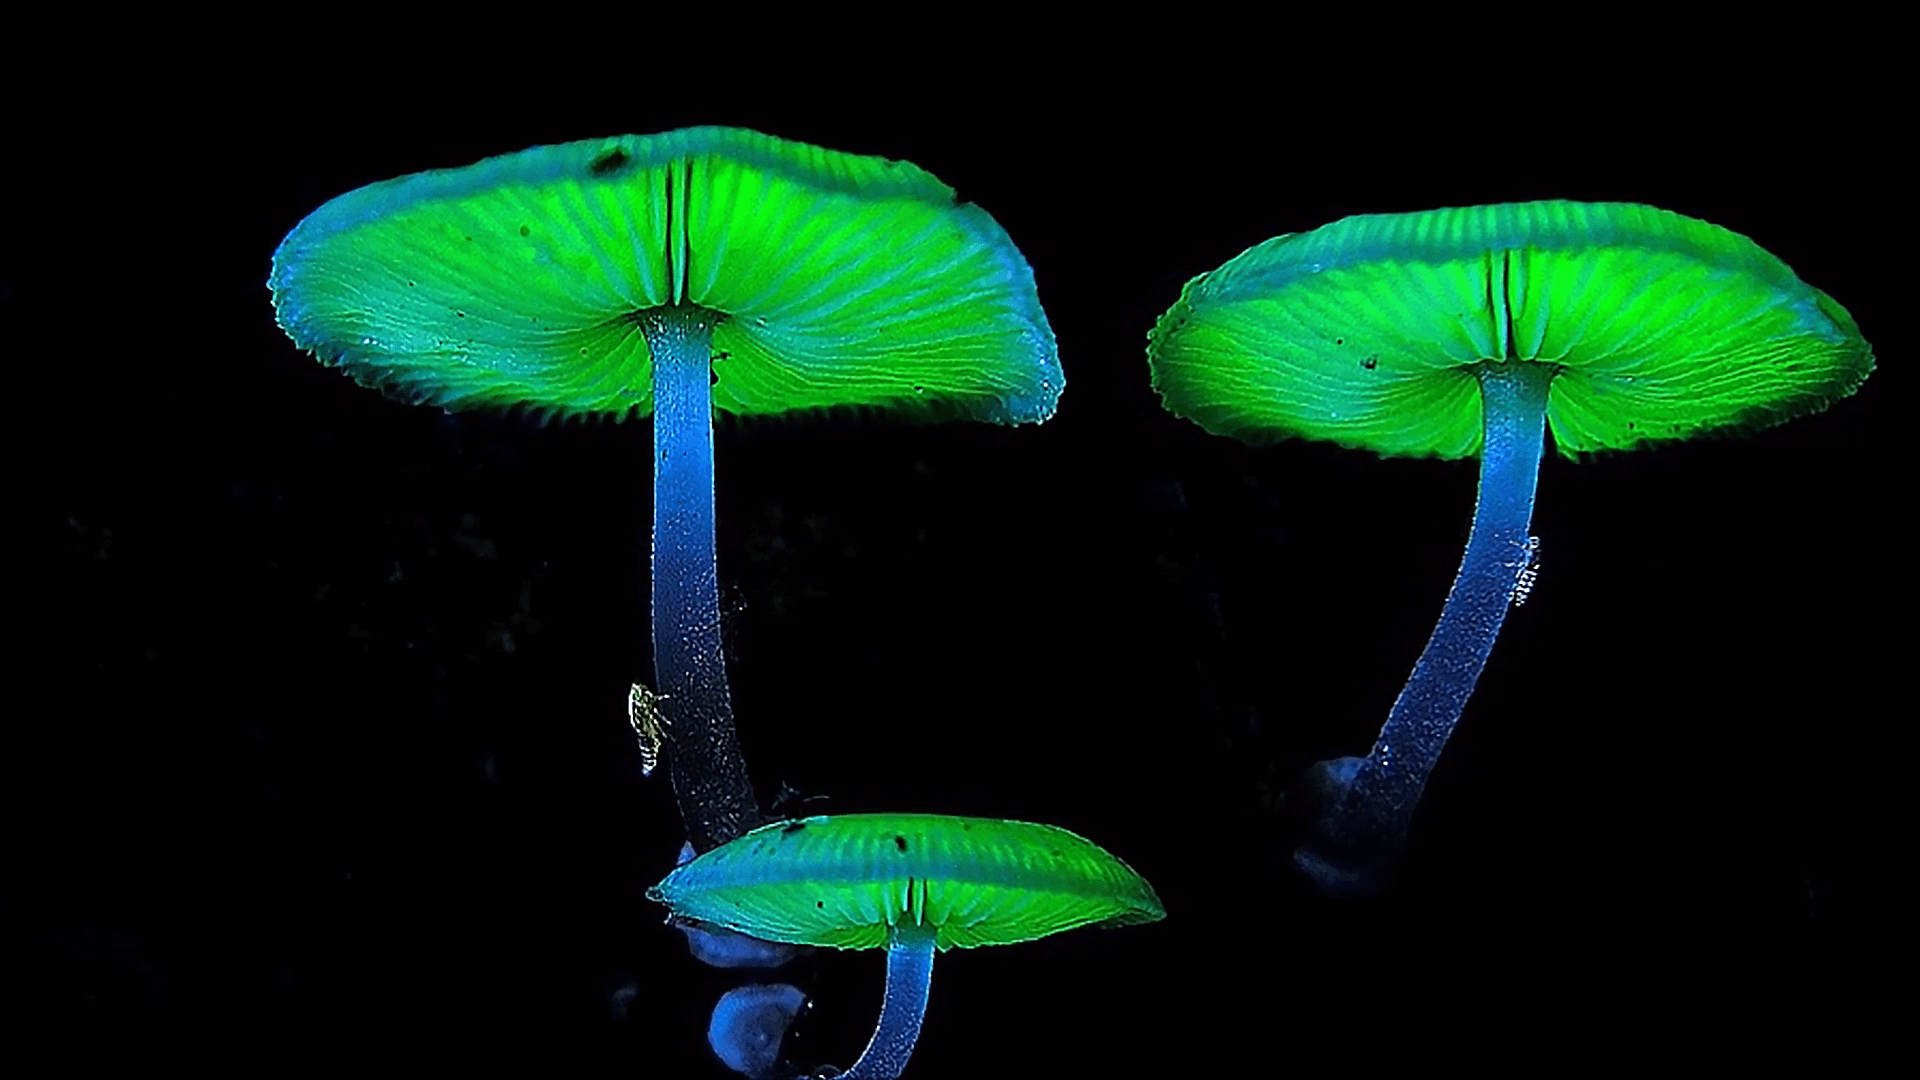 原创云南发现神奇发光蘑菇一到夜晚就会发绿光它究竟是什么